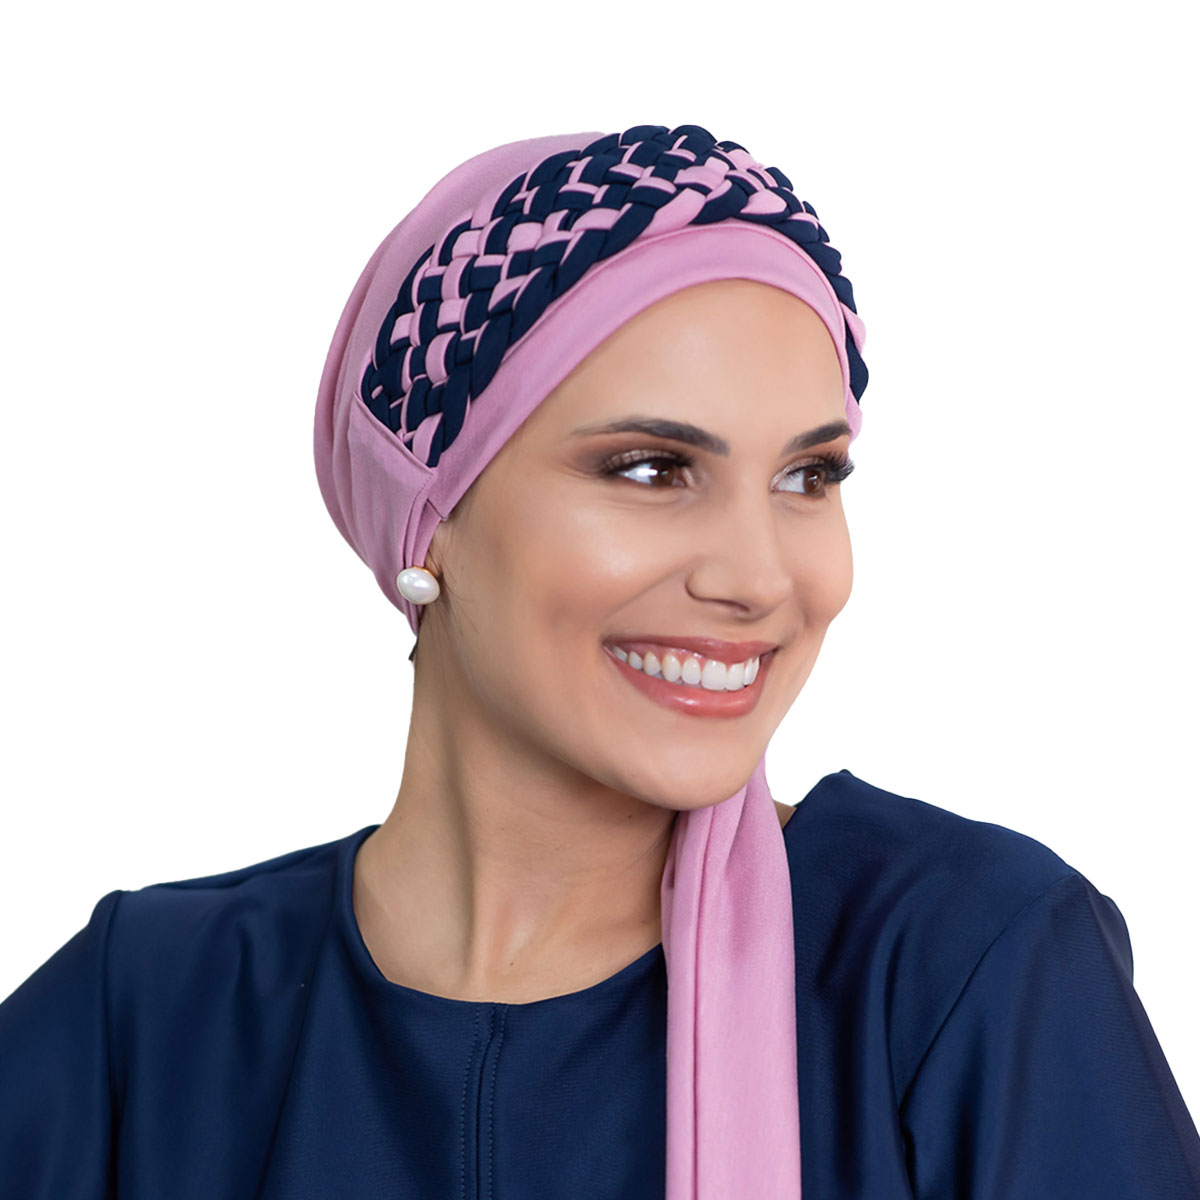 Turbante Rosa Velho e Tiara de Trança Larga Rosa velho com Azul Marinho (Duo) para quimioterapia